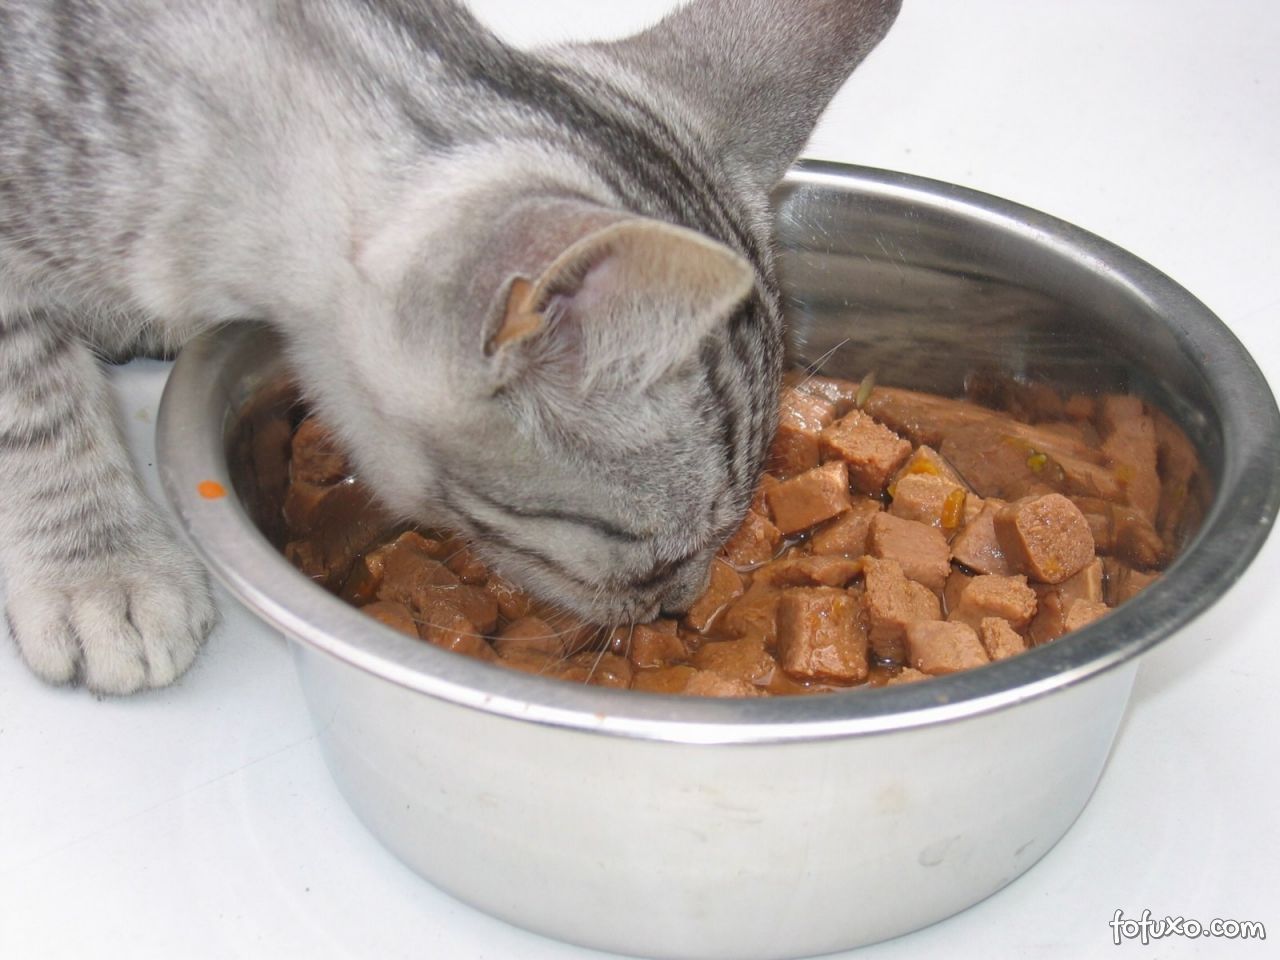 Os principais tipos de alimentos para o seu gato